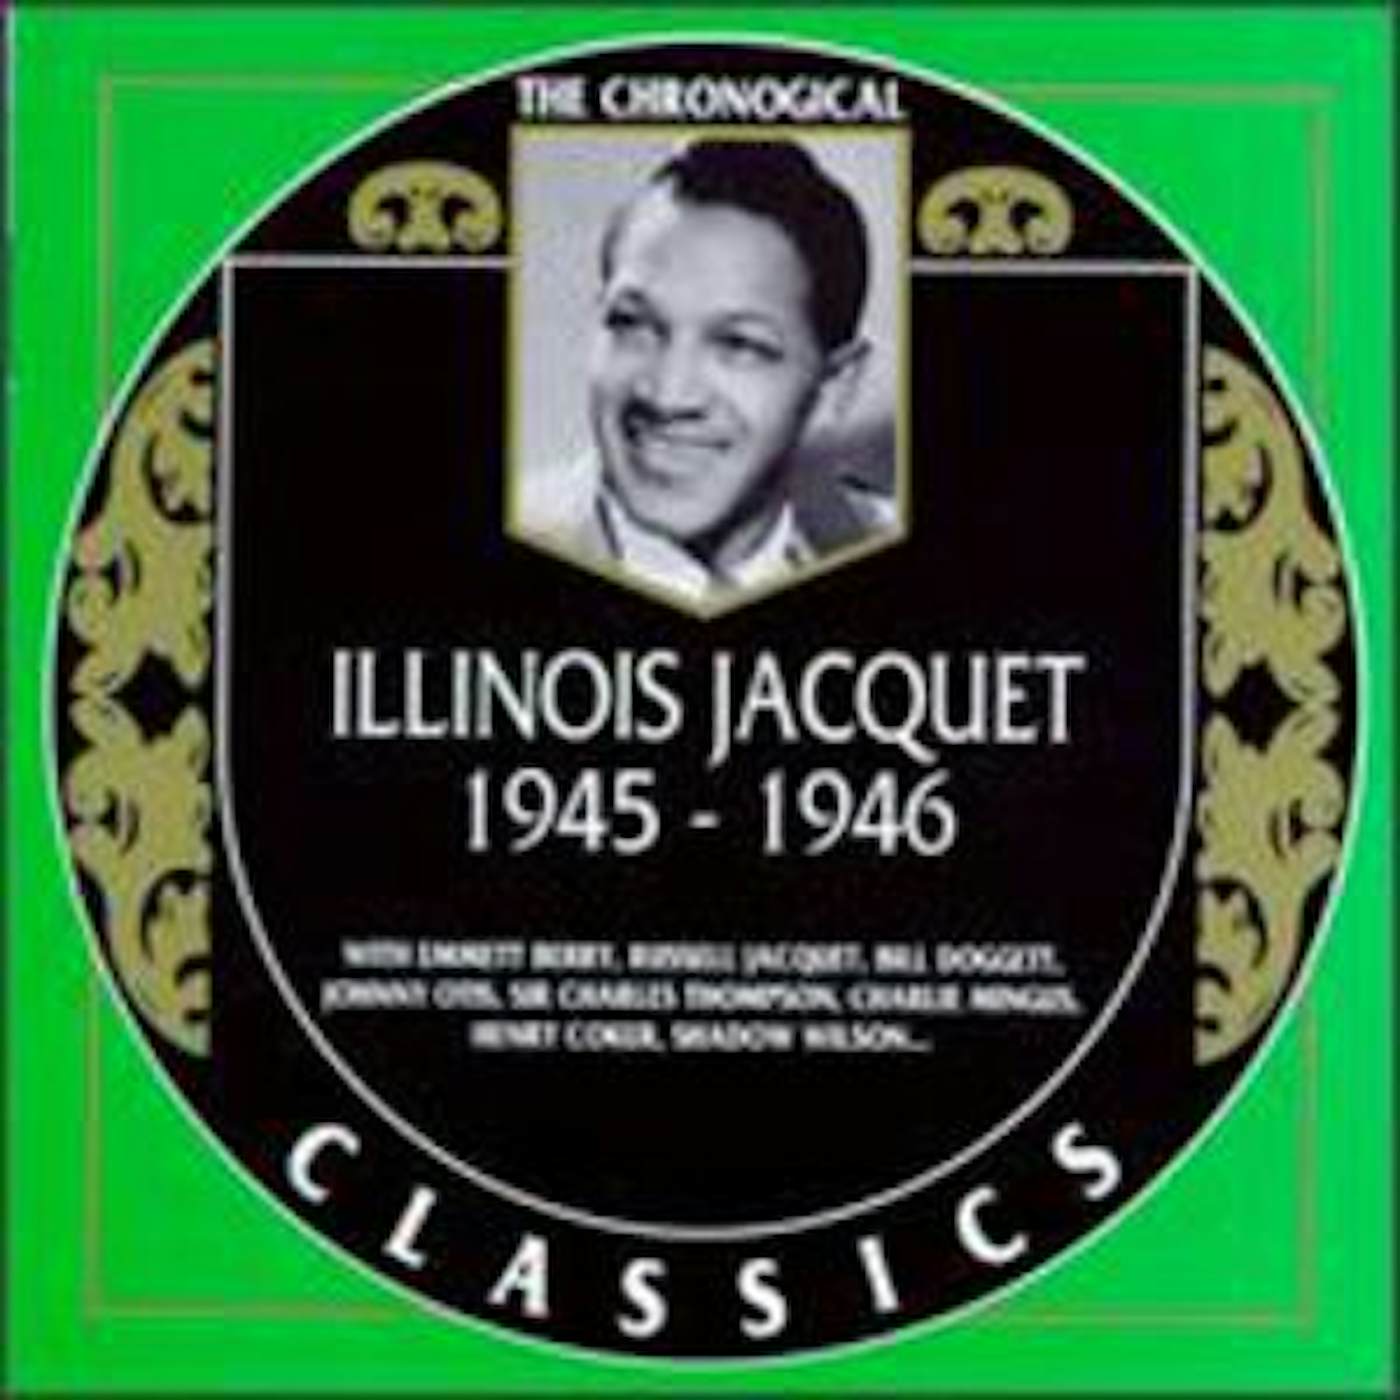 Illinois Jacquet 1945-1946 CD